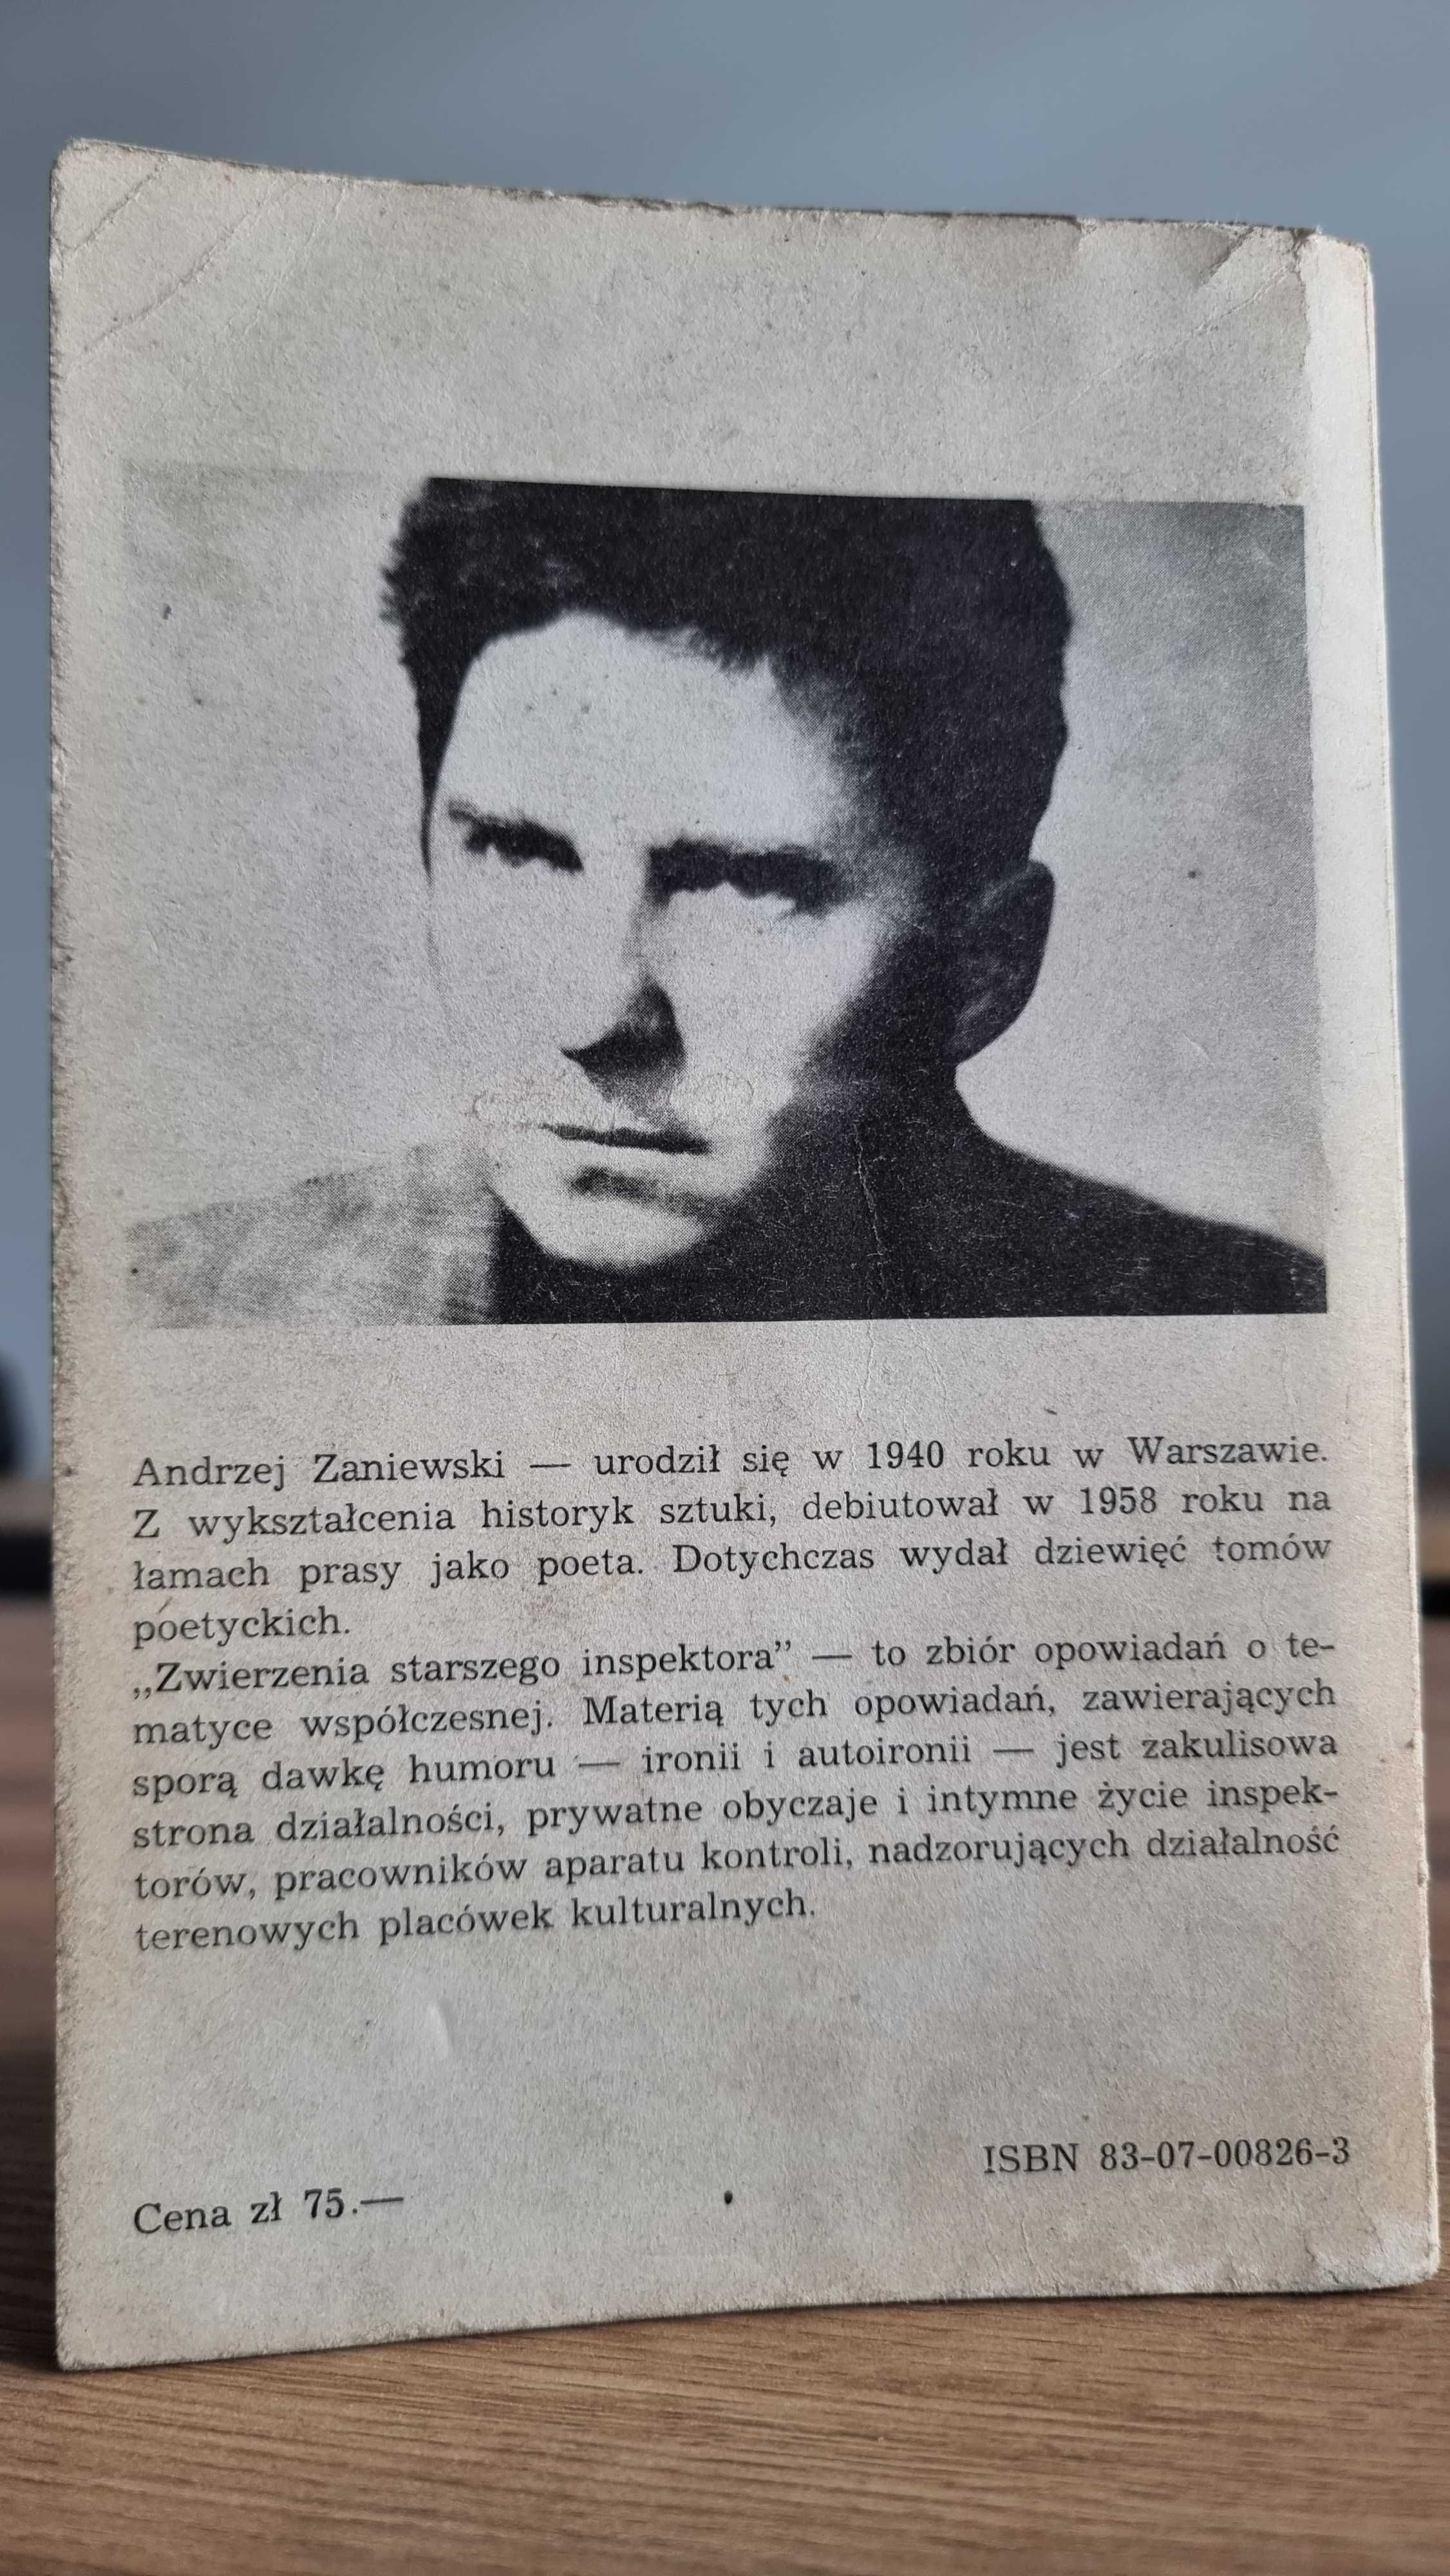 "Zwierzenia starszego inspektora" - Andrzej Zaniewski, Wydanie I